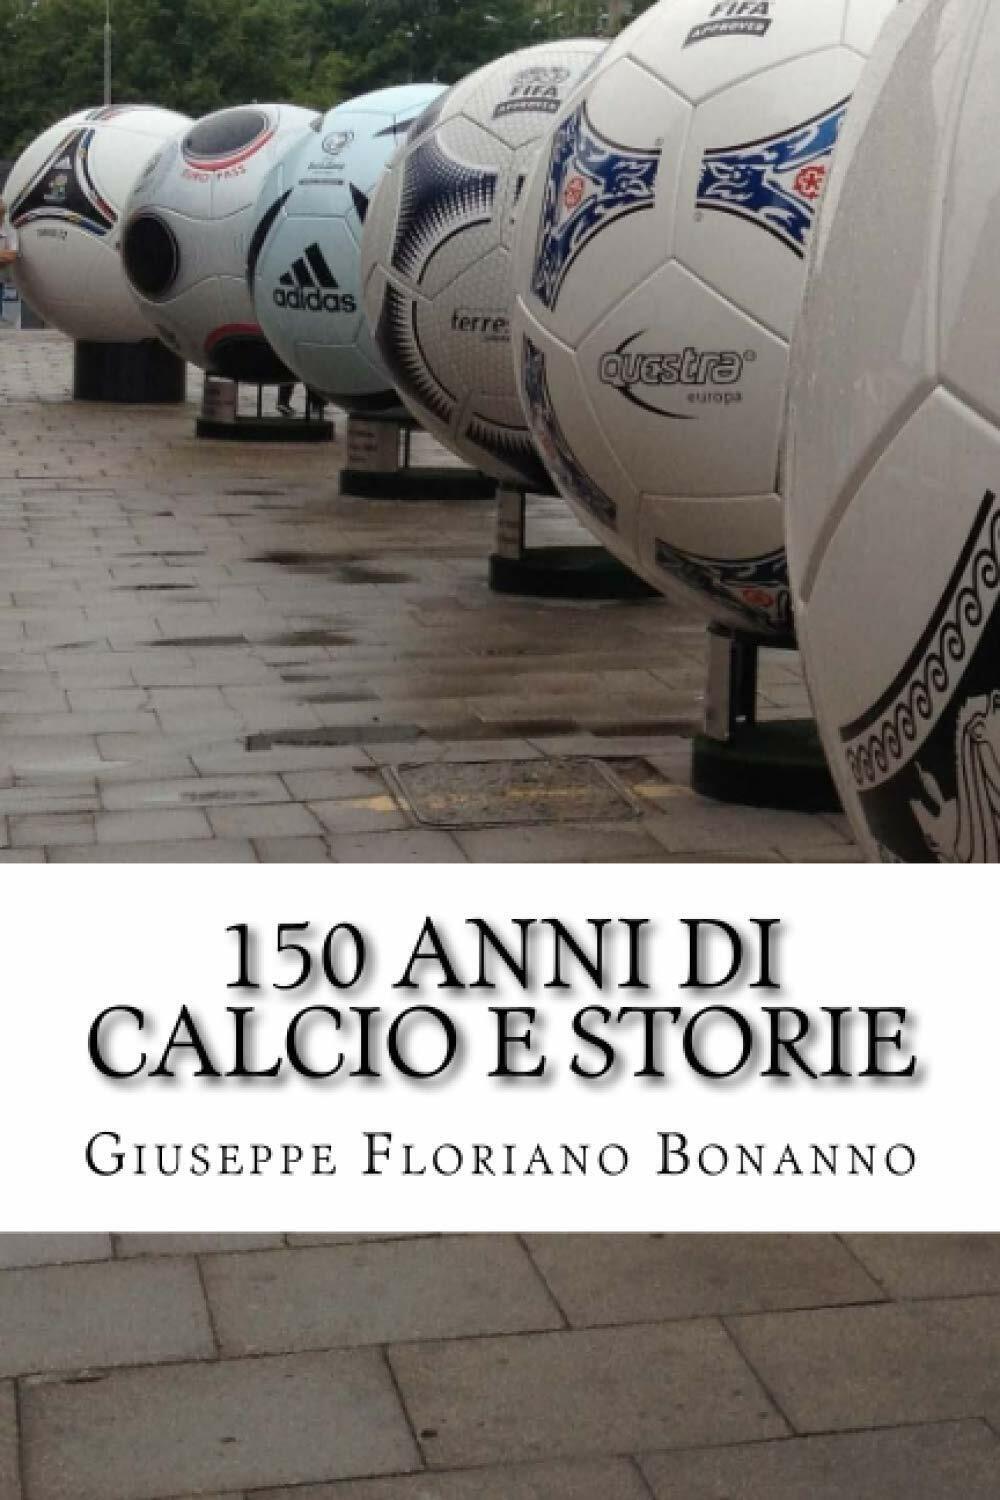 150 anni di calcio e storie - Giuseppe Floriano Bonanno - 2016